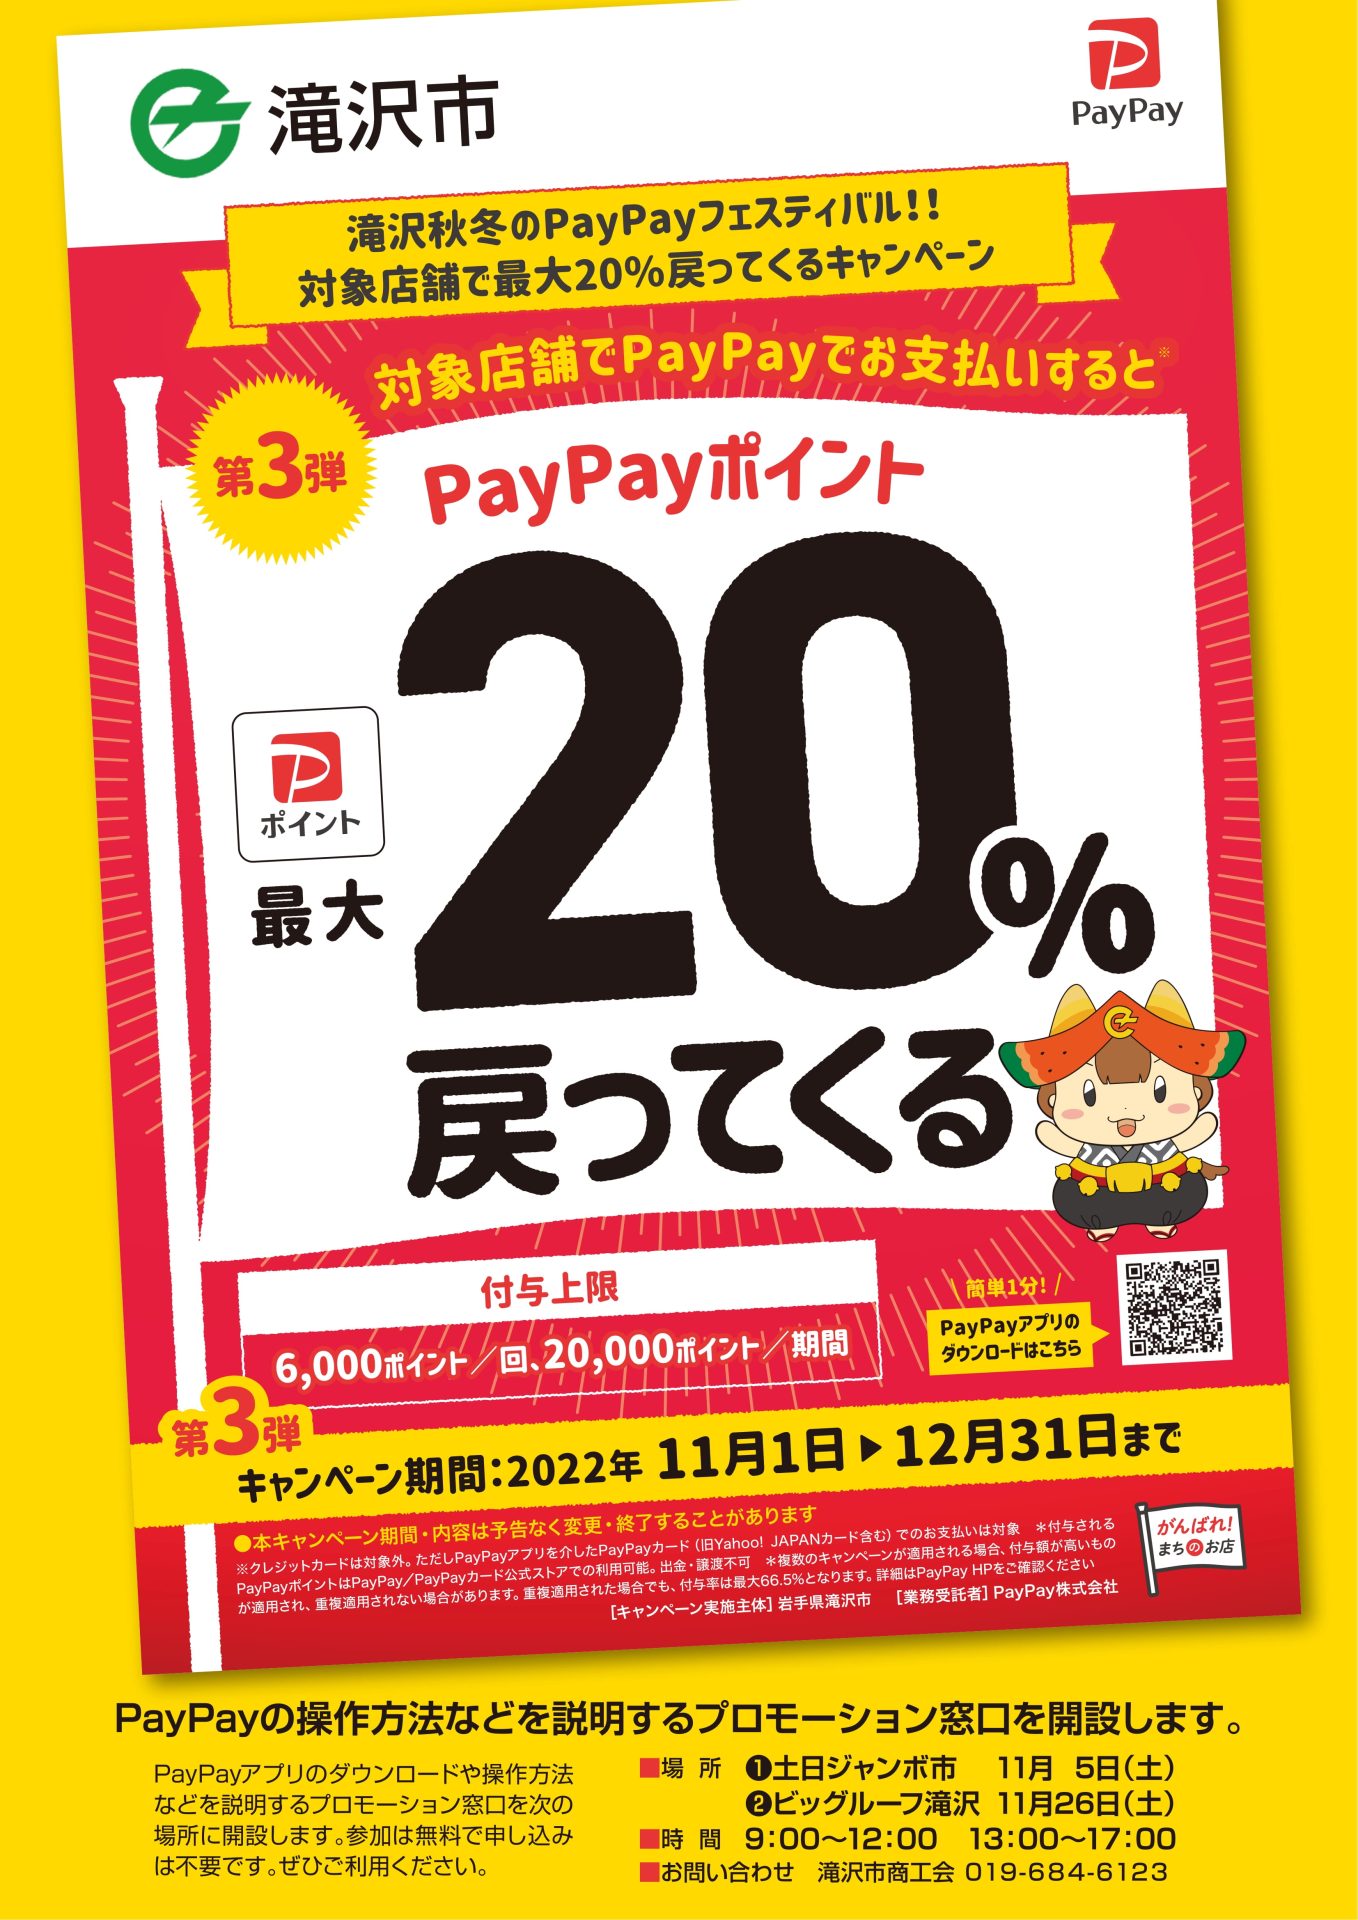 滝沢秋冬のPayPayフェスティバル!!対象店舗で最大20％戻ってくるキャンペーン